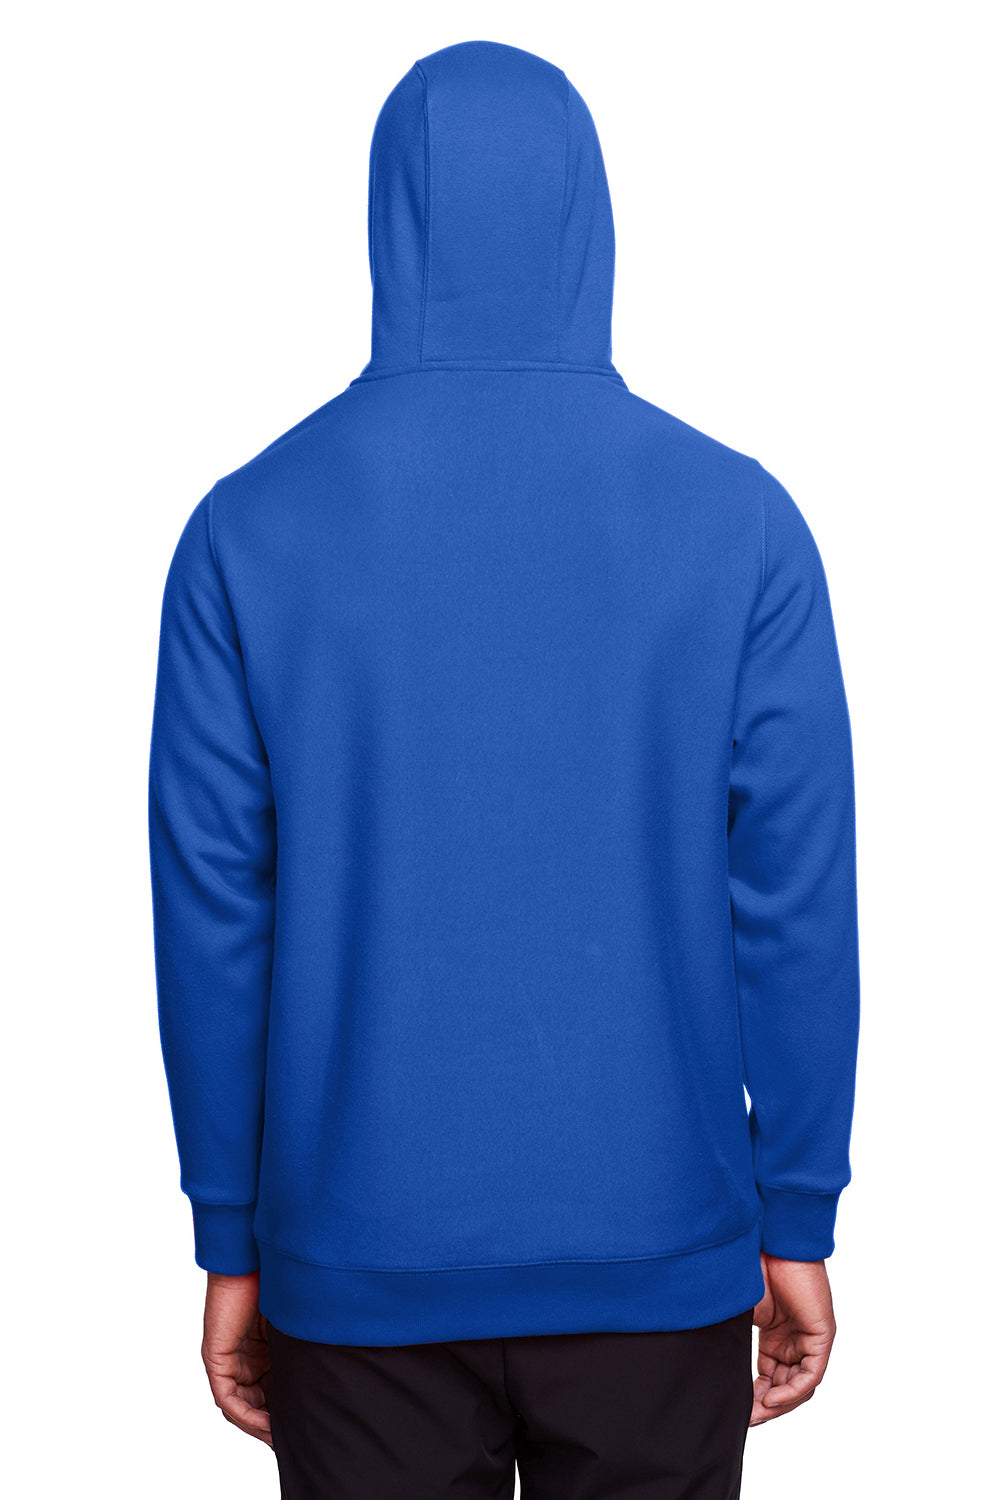 Team 365 TT96 Mens Zone HydroSport Fleece Water Resistant Hooded Sweatshirt Hoodie Royal Blue Back